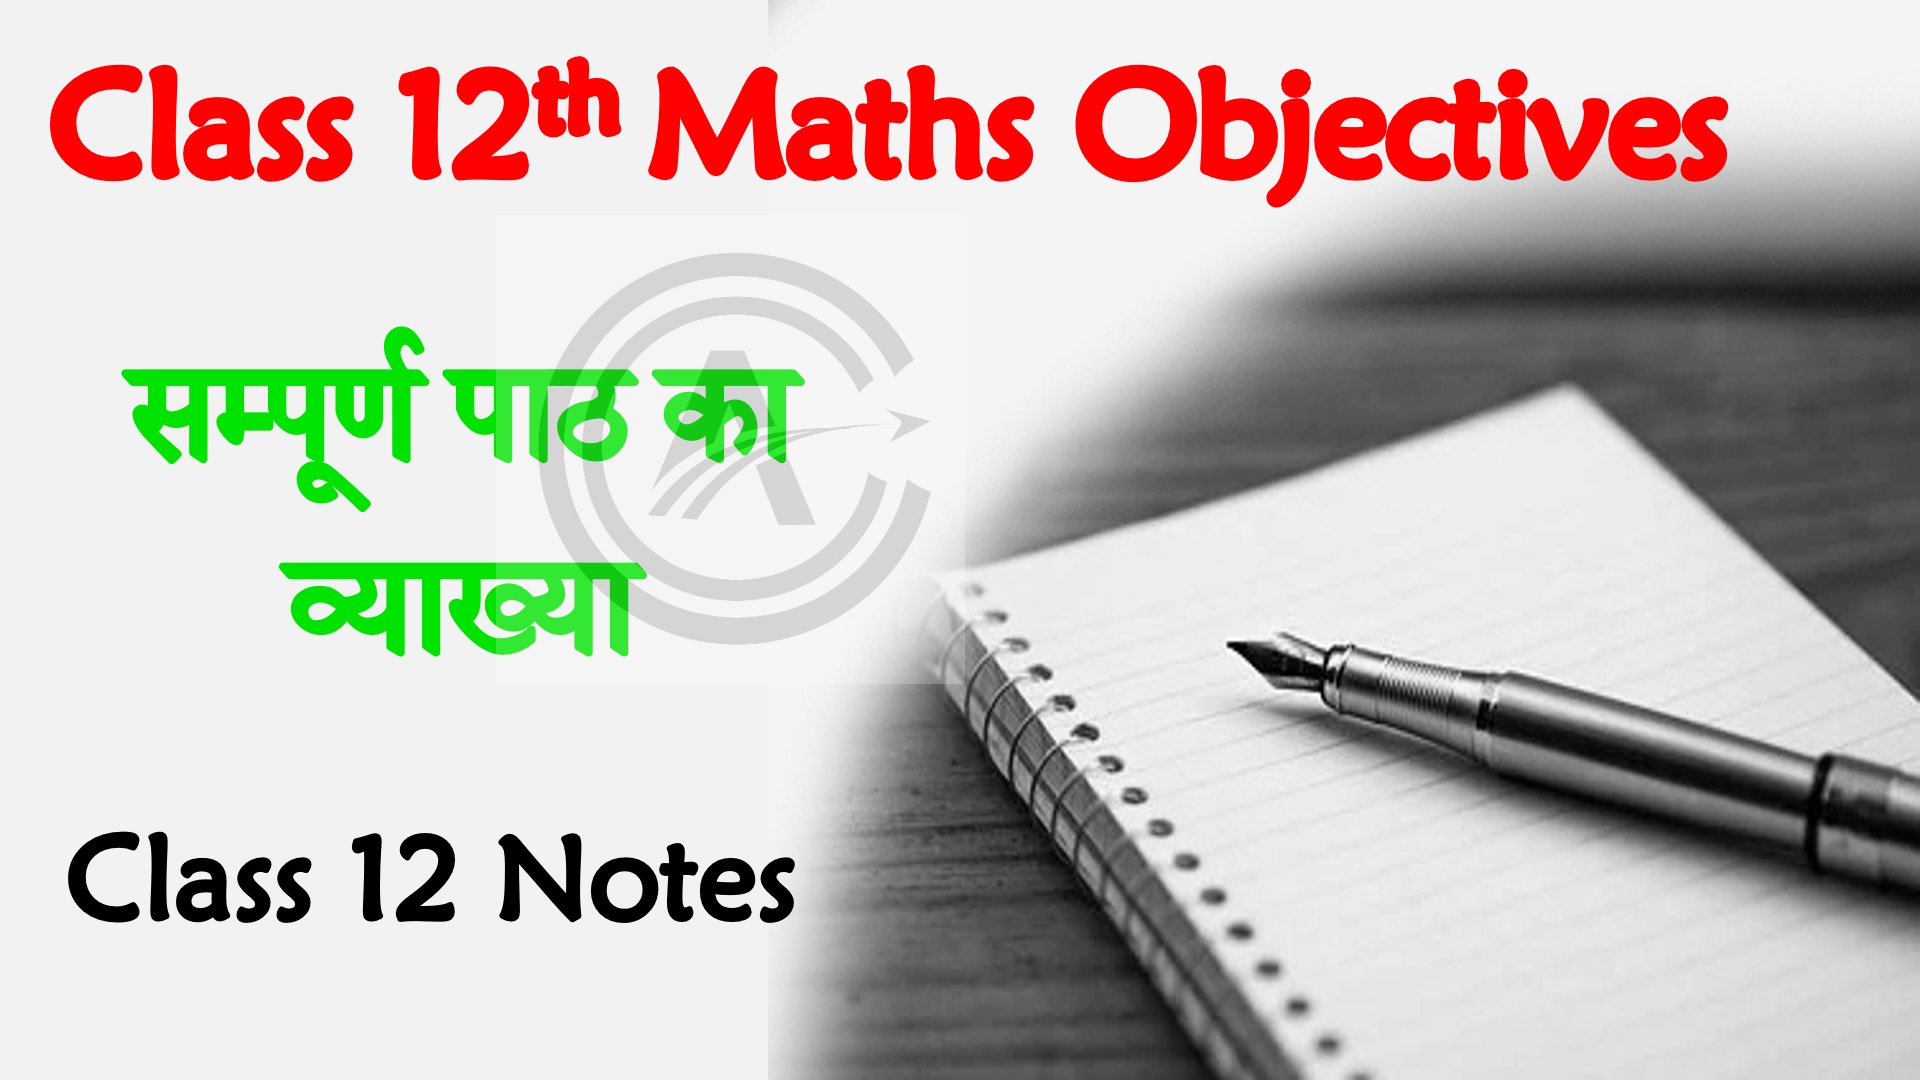 Bihar Board Class 12th Maths Objective Questions